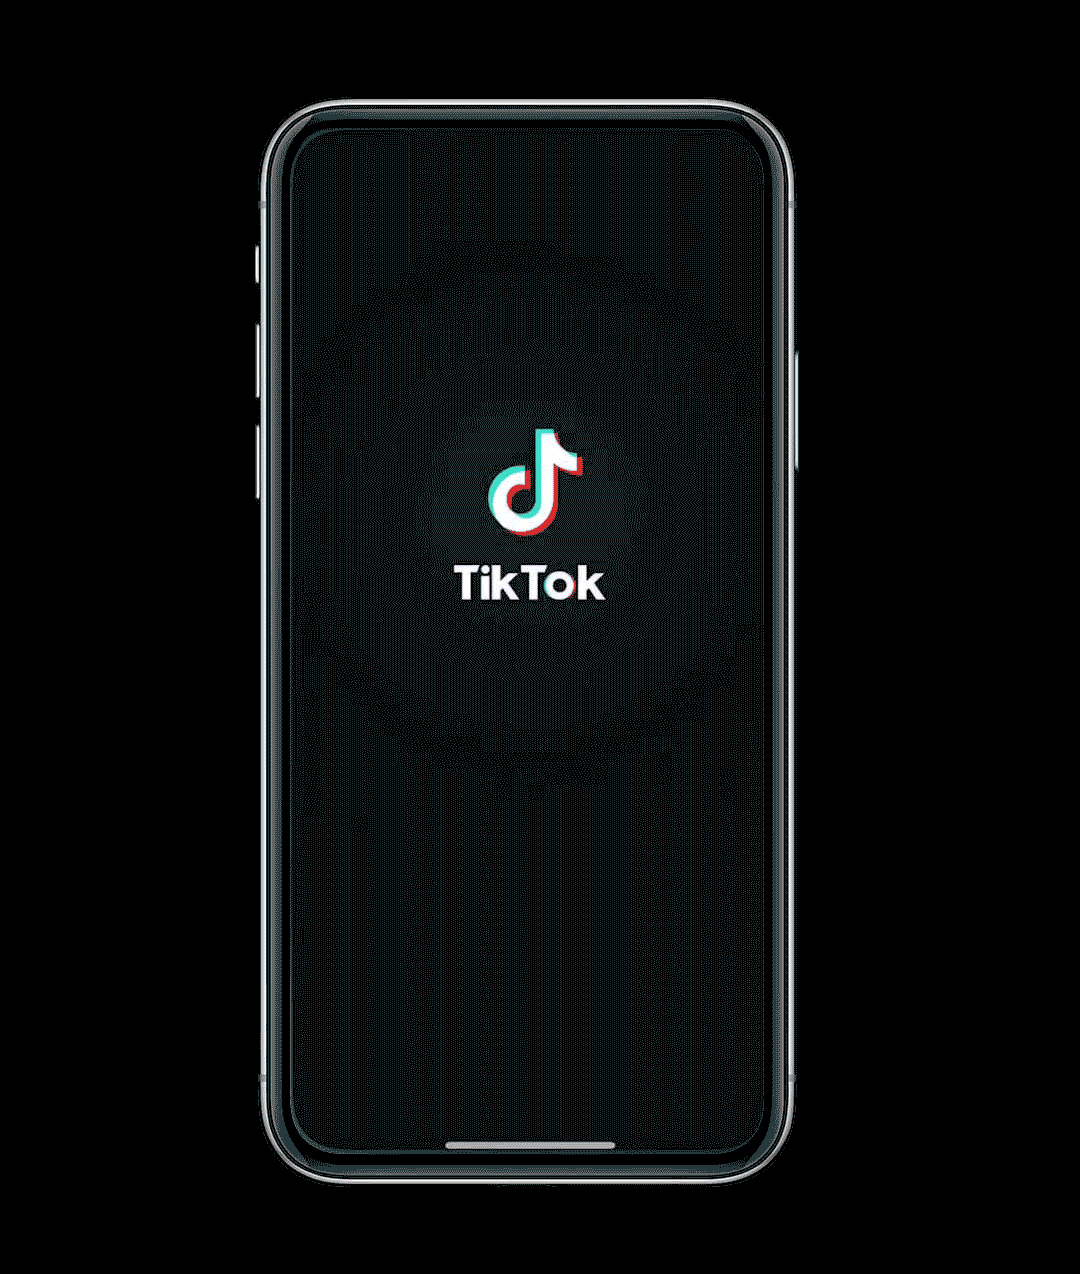 红毛猩猩PONGO完成以数据服务商为核心的TikTok全牌照资质 - 640 4